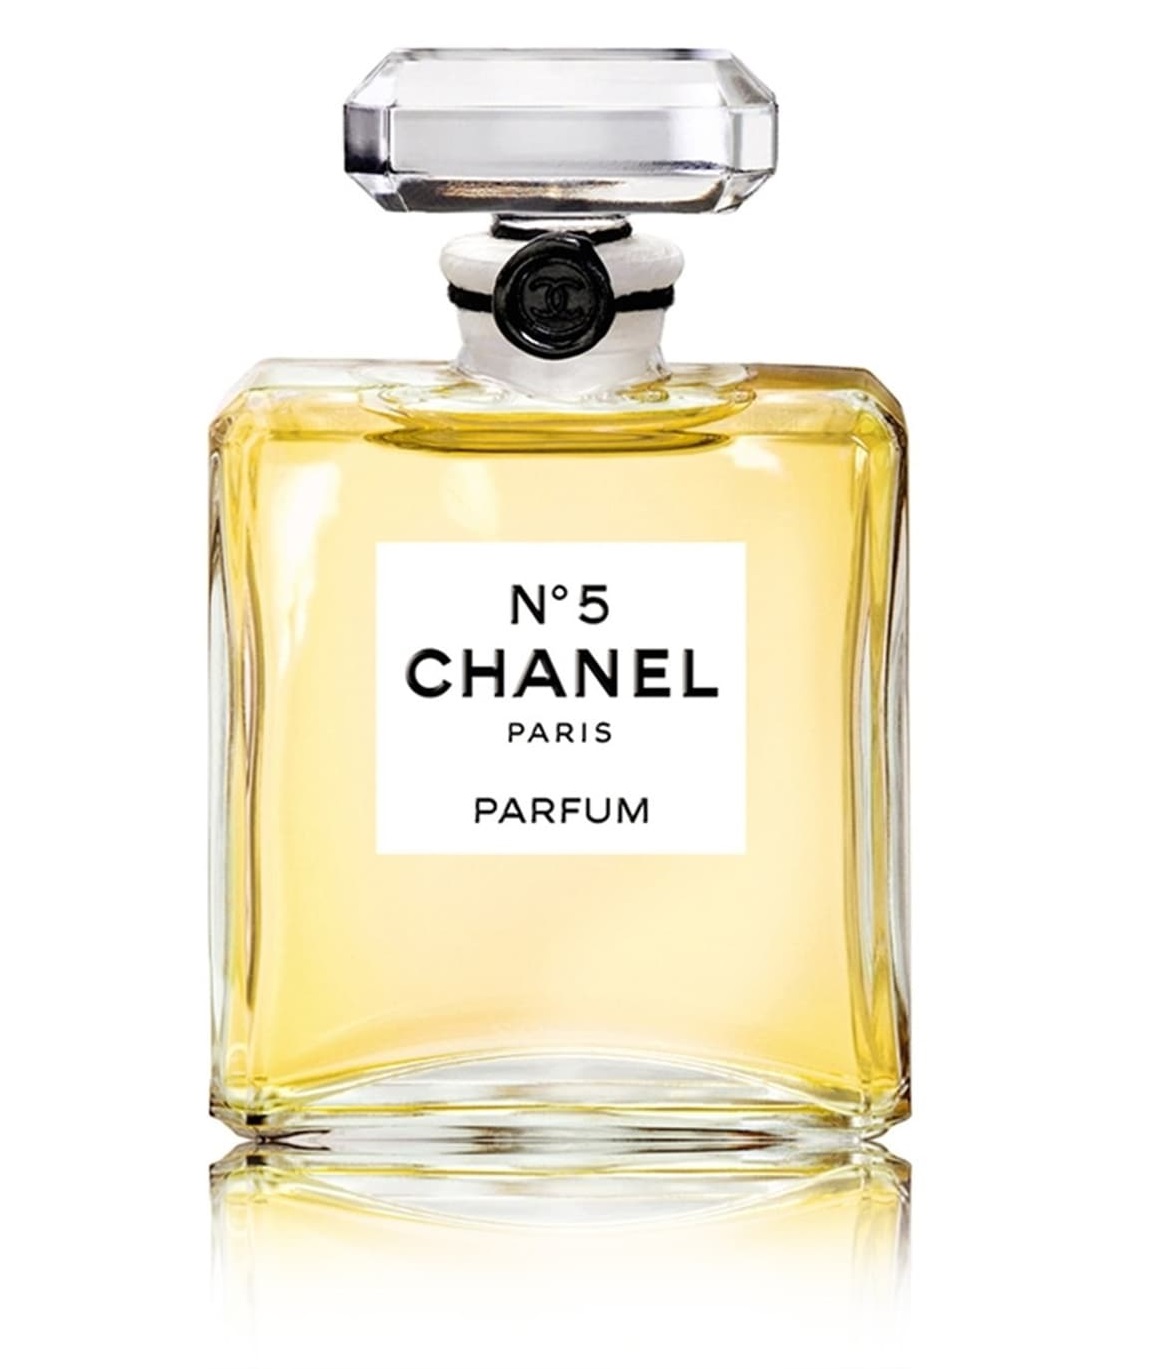 Harga Parfum Chanel N 5